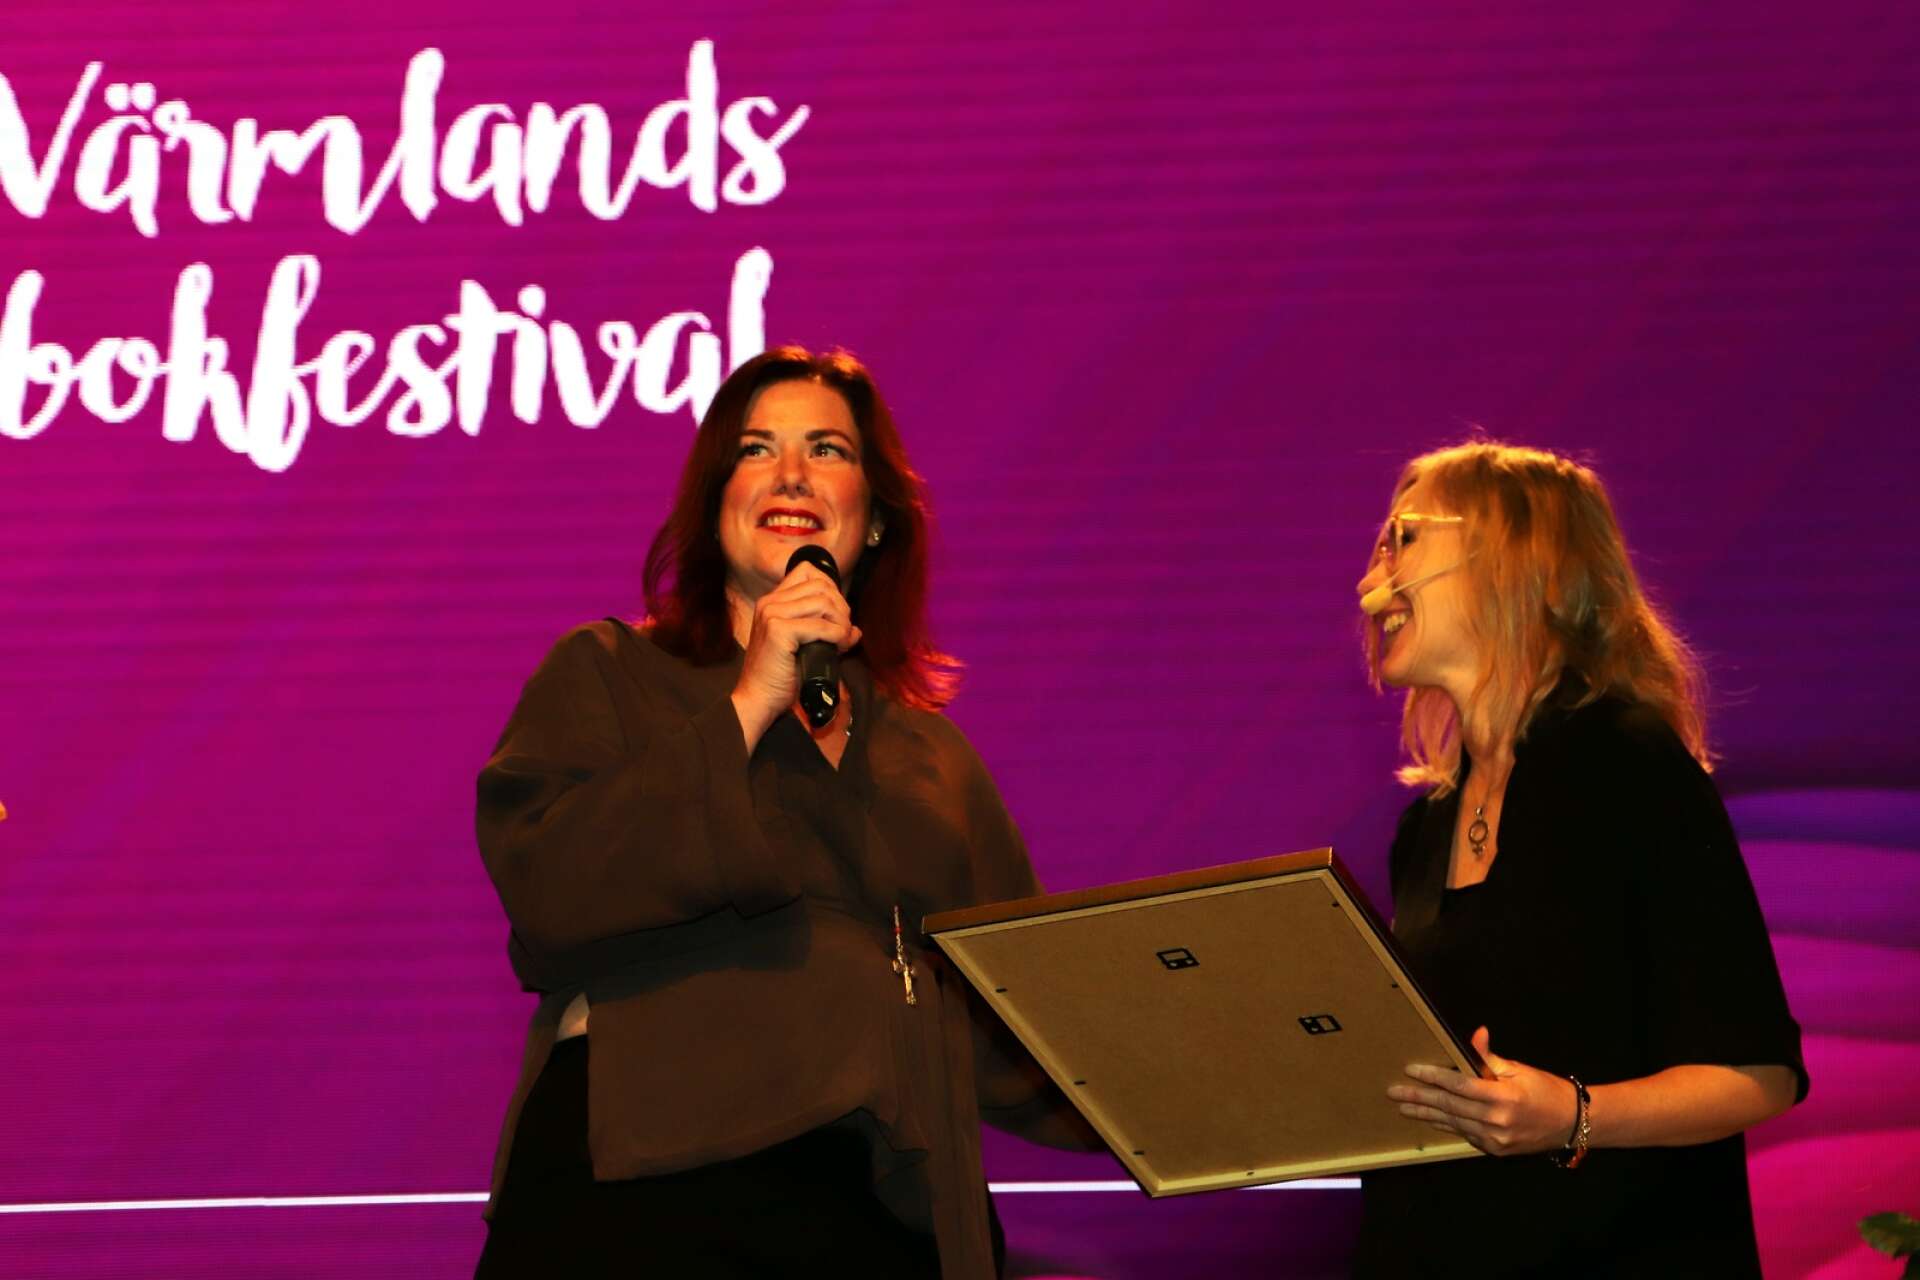 Jenny Küttim är en av årets litteraturpristagare. Priserna delades ut på Värmlands bokfestival av kultur- och bildningsnämndens ordförande Sofia Magnusson.